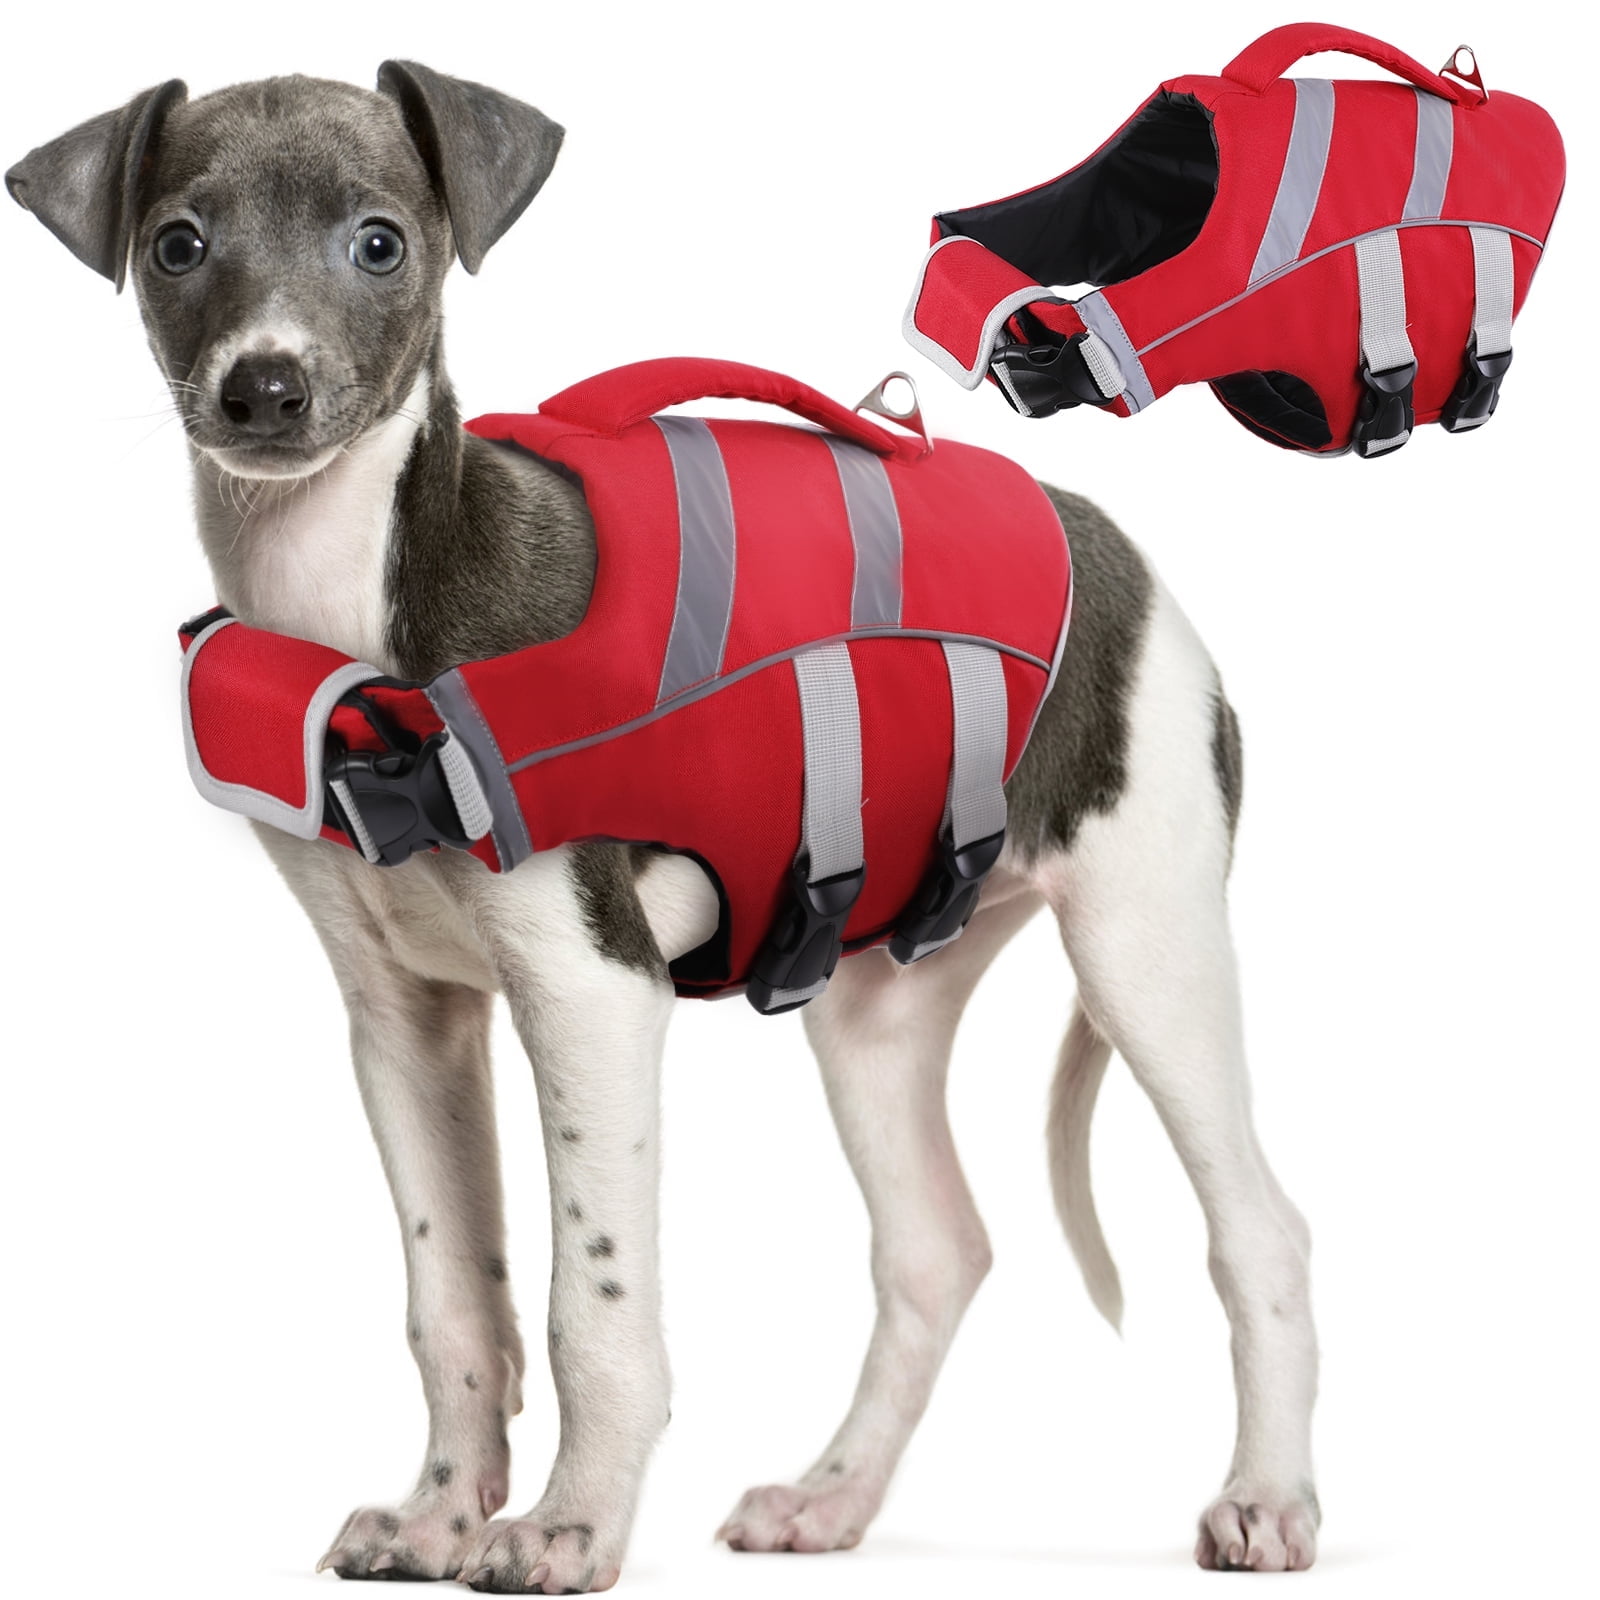 Kuoser Dog Life Jacket with Reflective Stripes, Adjustable Dog Life ...